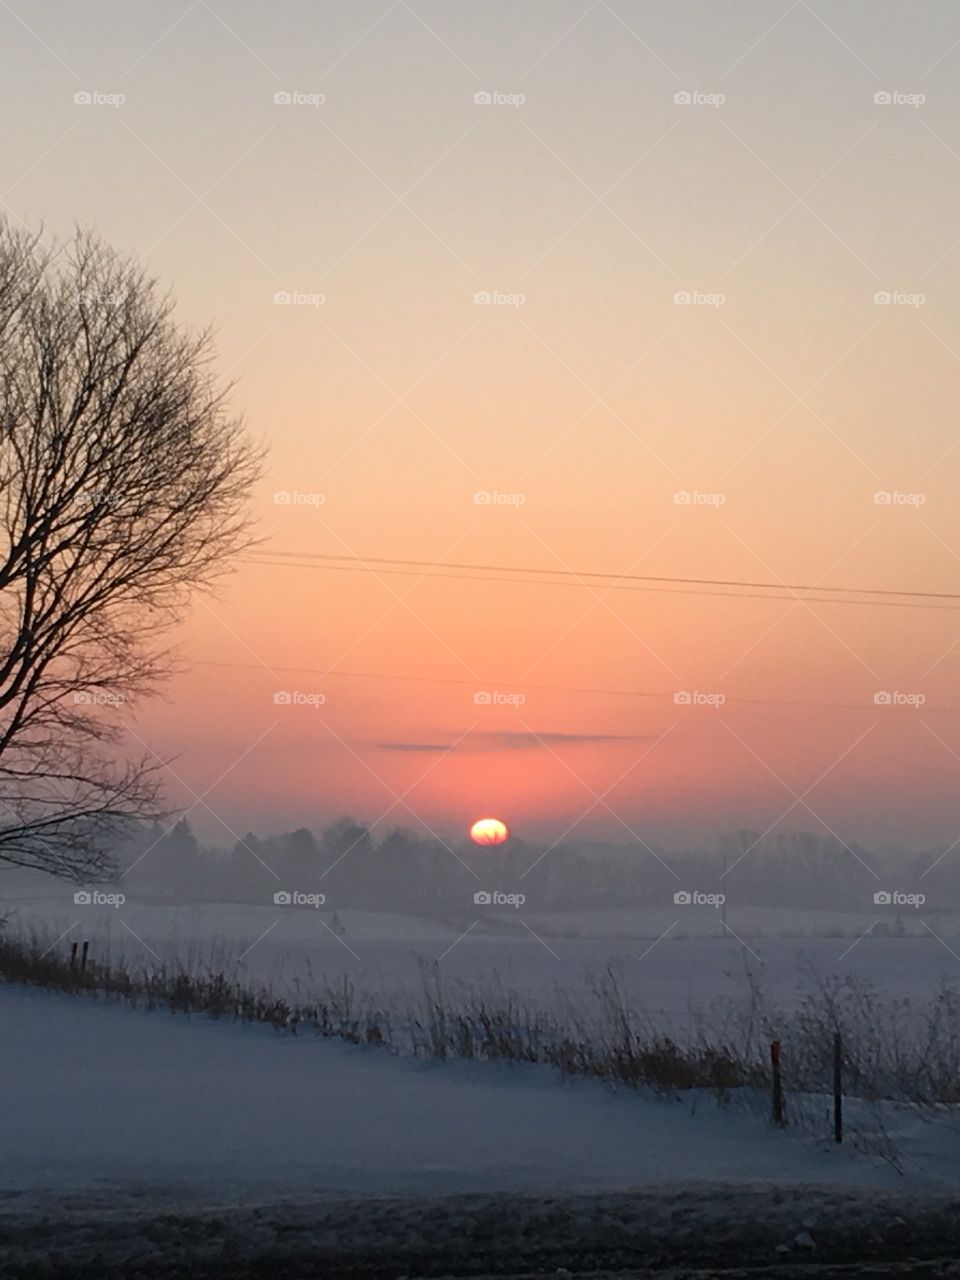 Winter, Snow, Dawn, Landscape, Cold